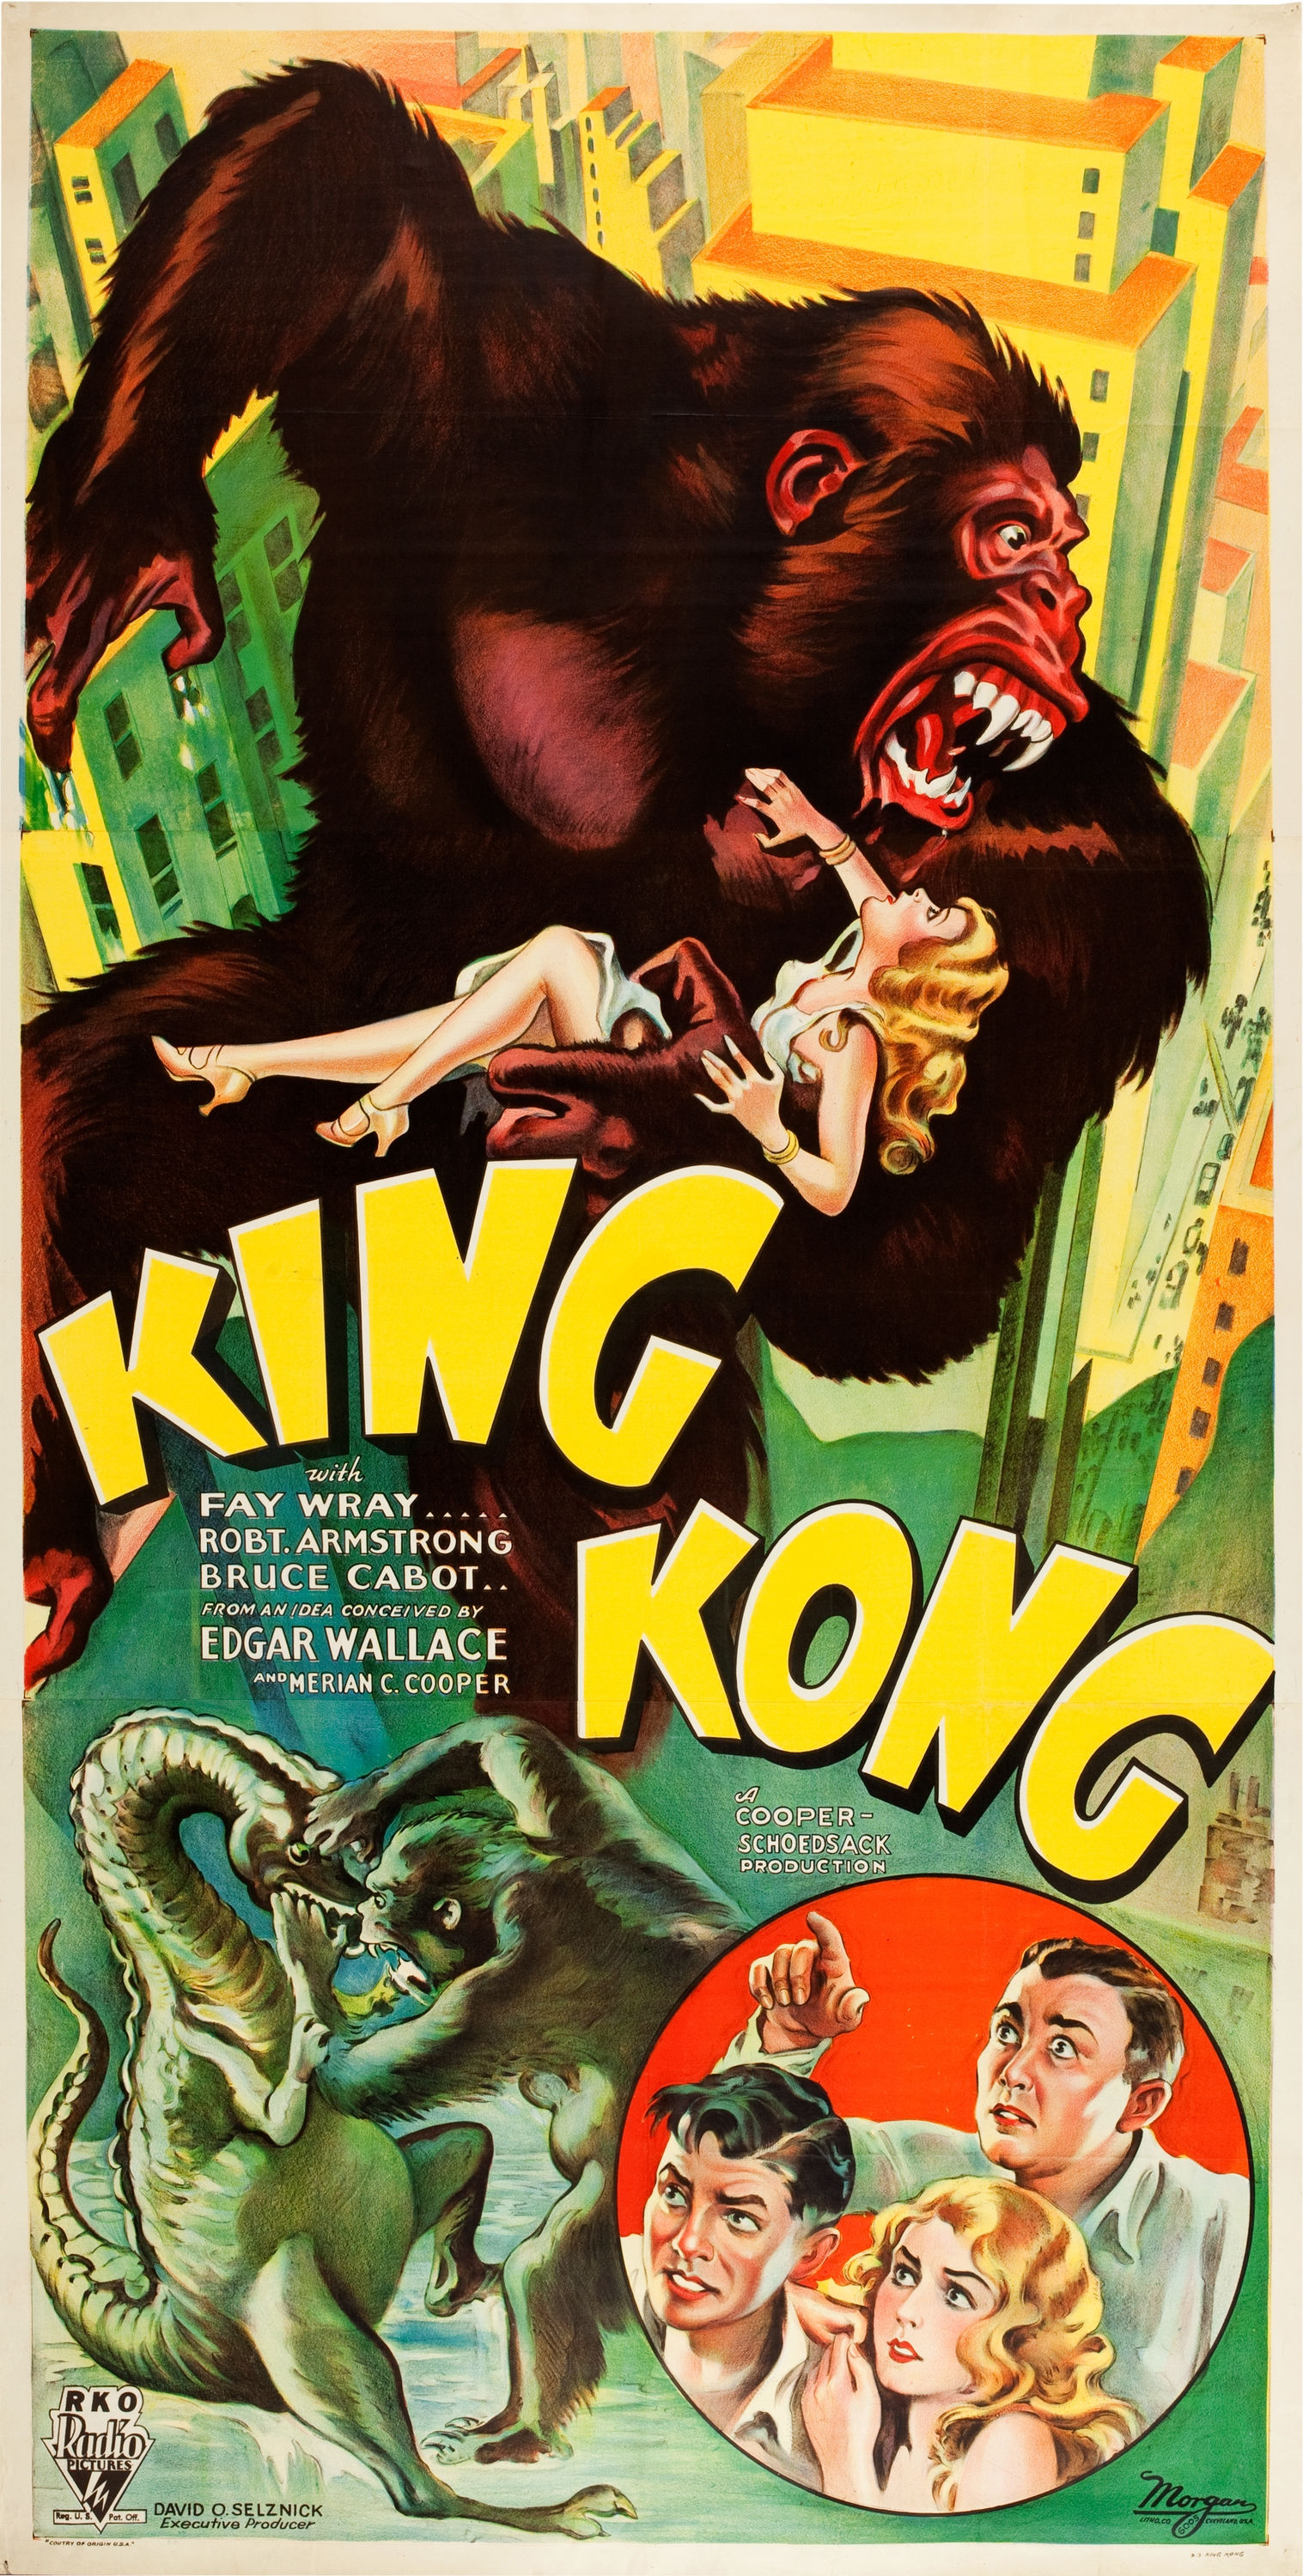 King Kong (película de 1933) - Wikipedia, la enciclopedia libre